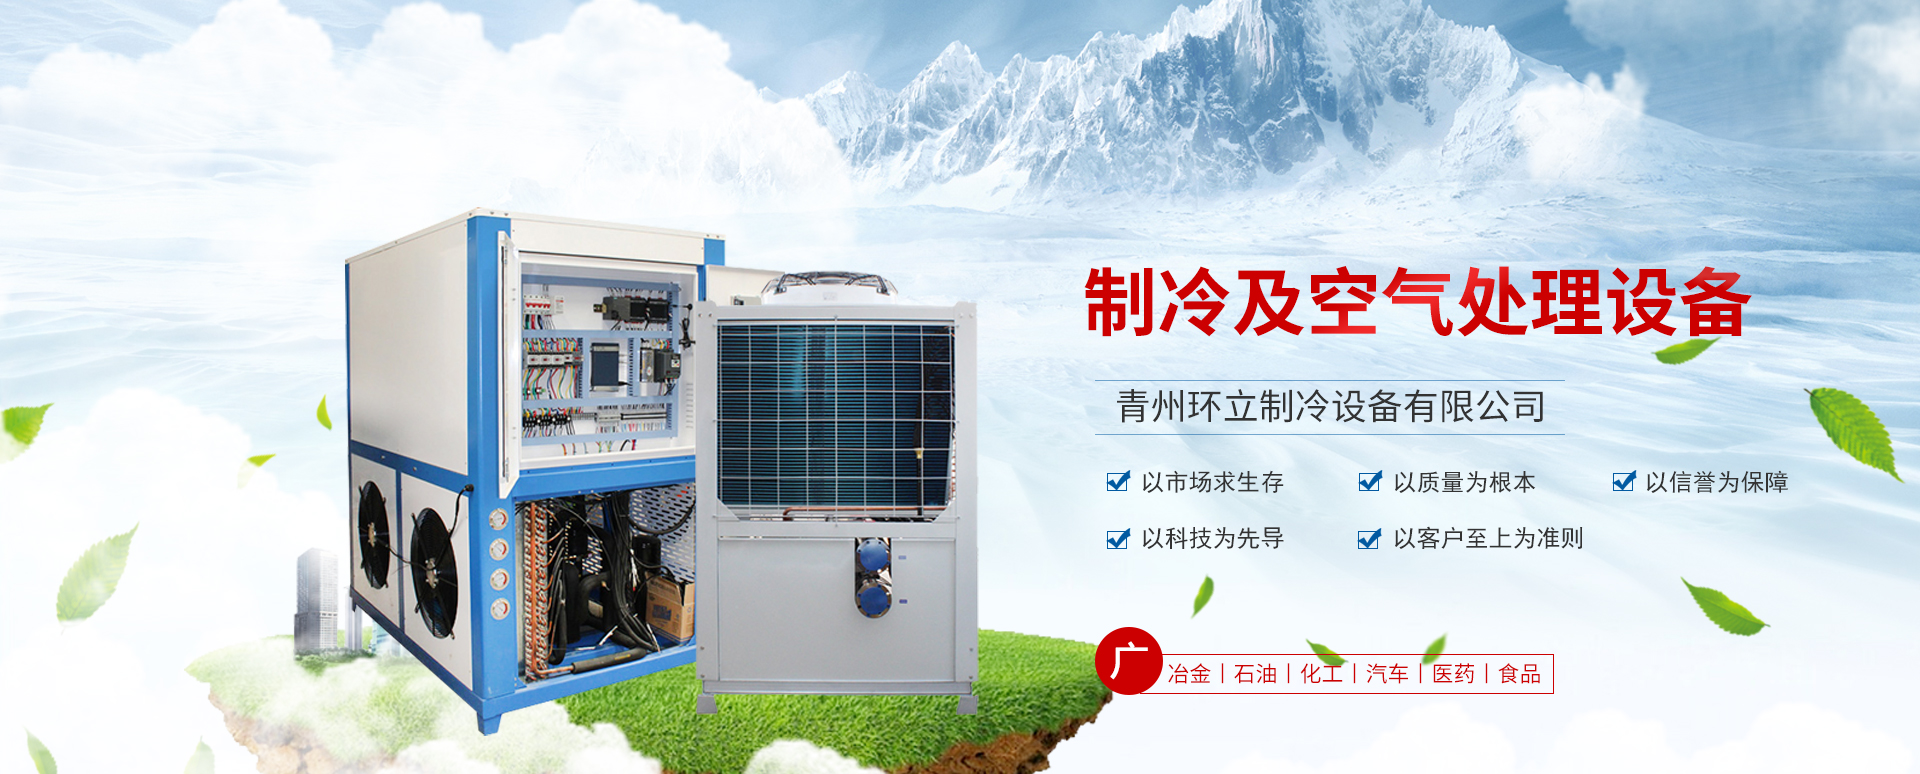 青州环立制冷设备有限公司